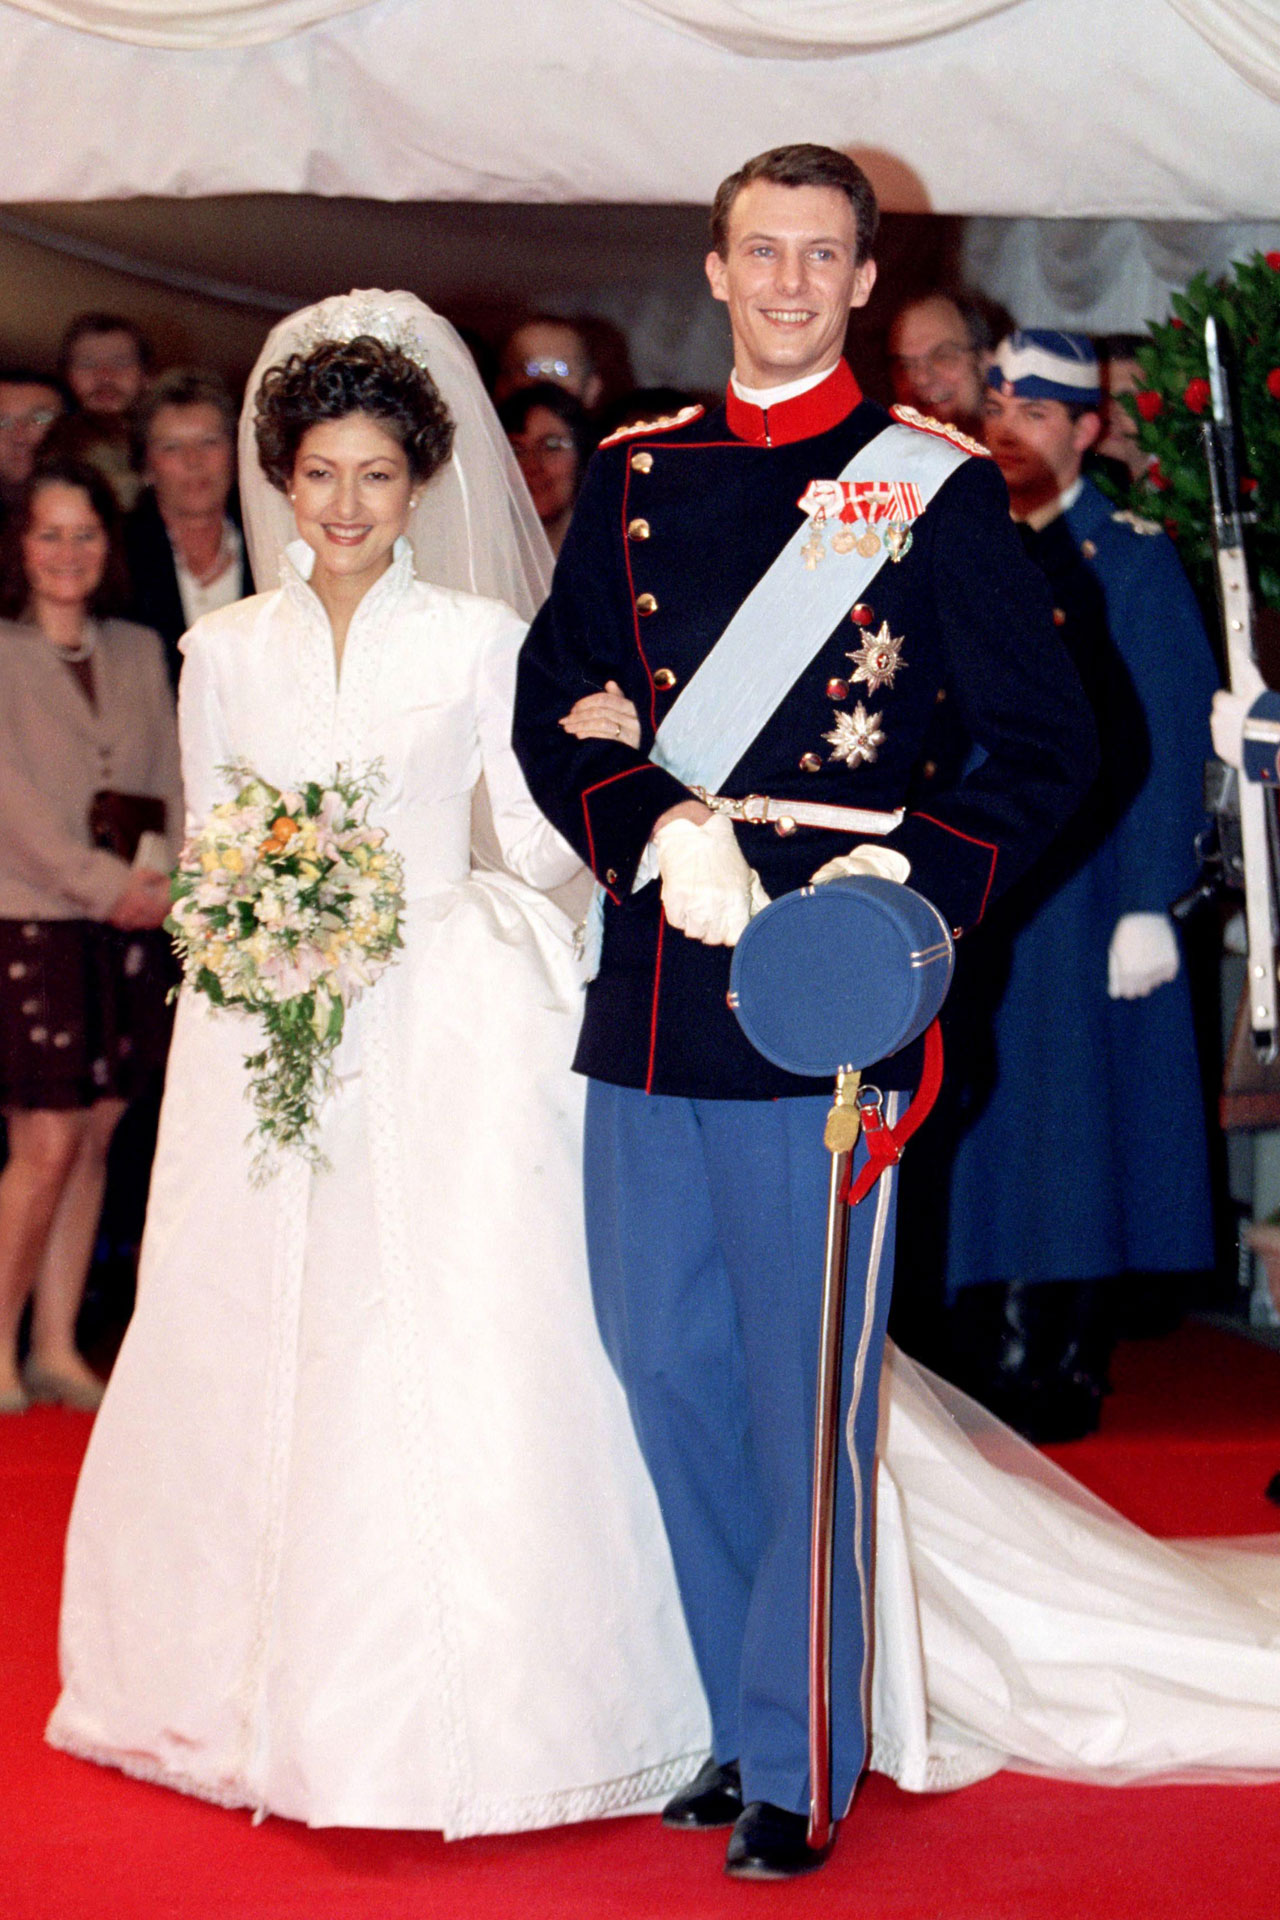 Из архивов: как выглядели королевские свадьбы 80 и 50 лет назад